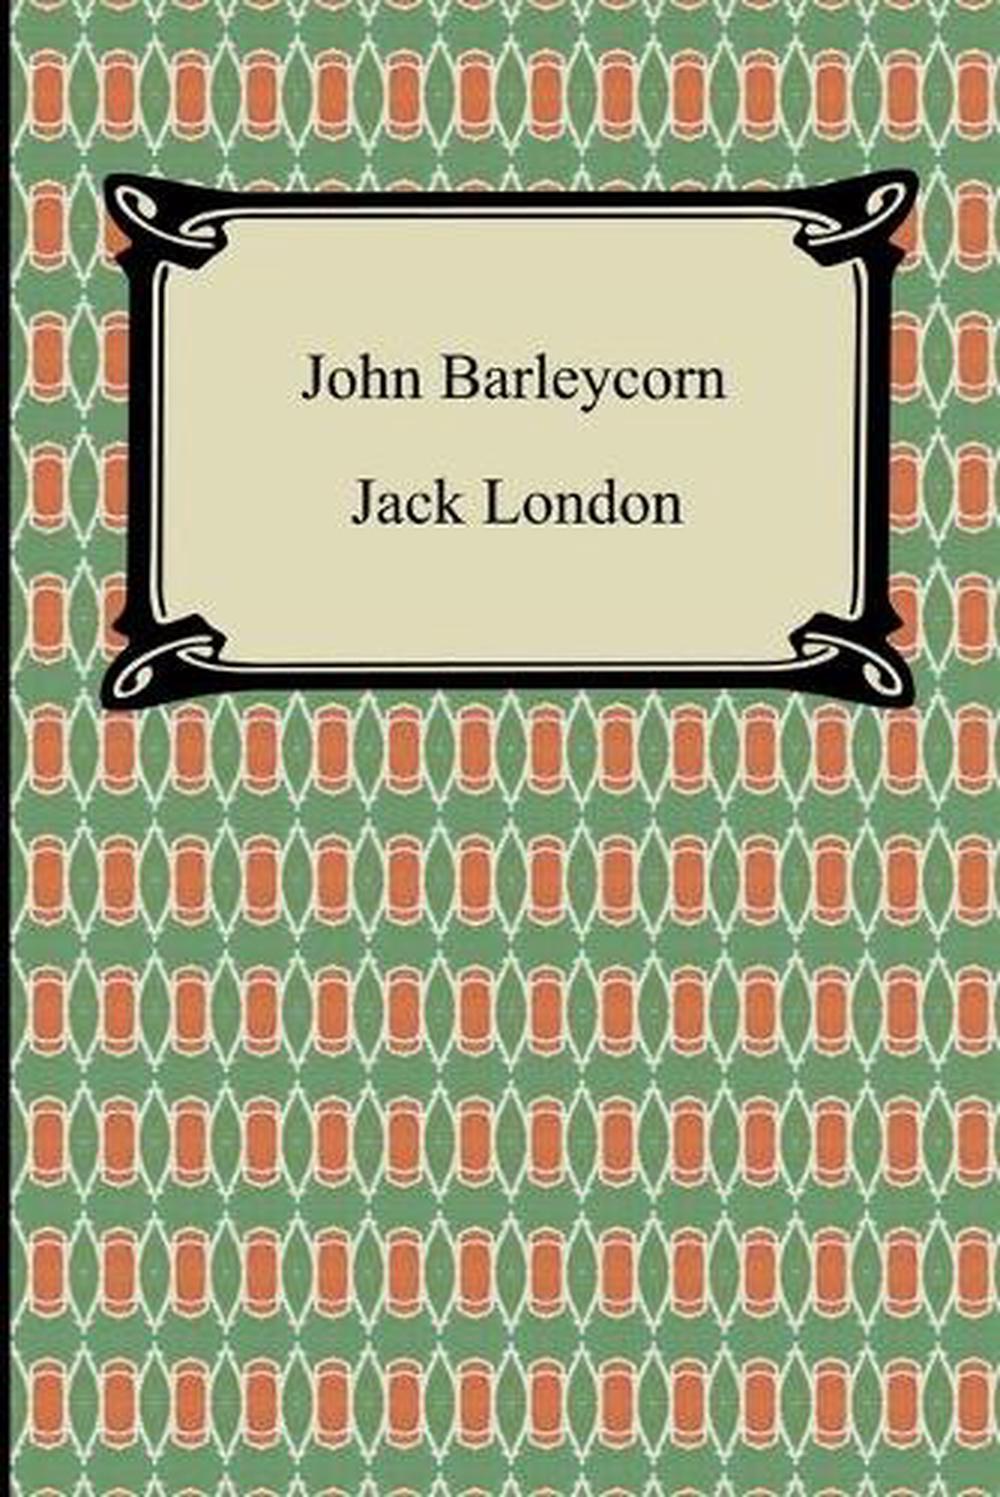 john barleycorn book